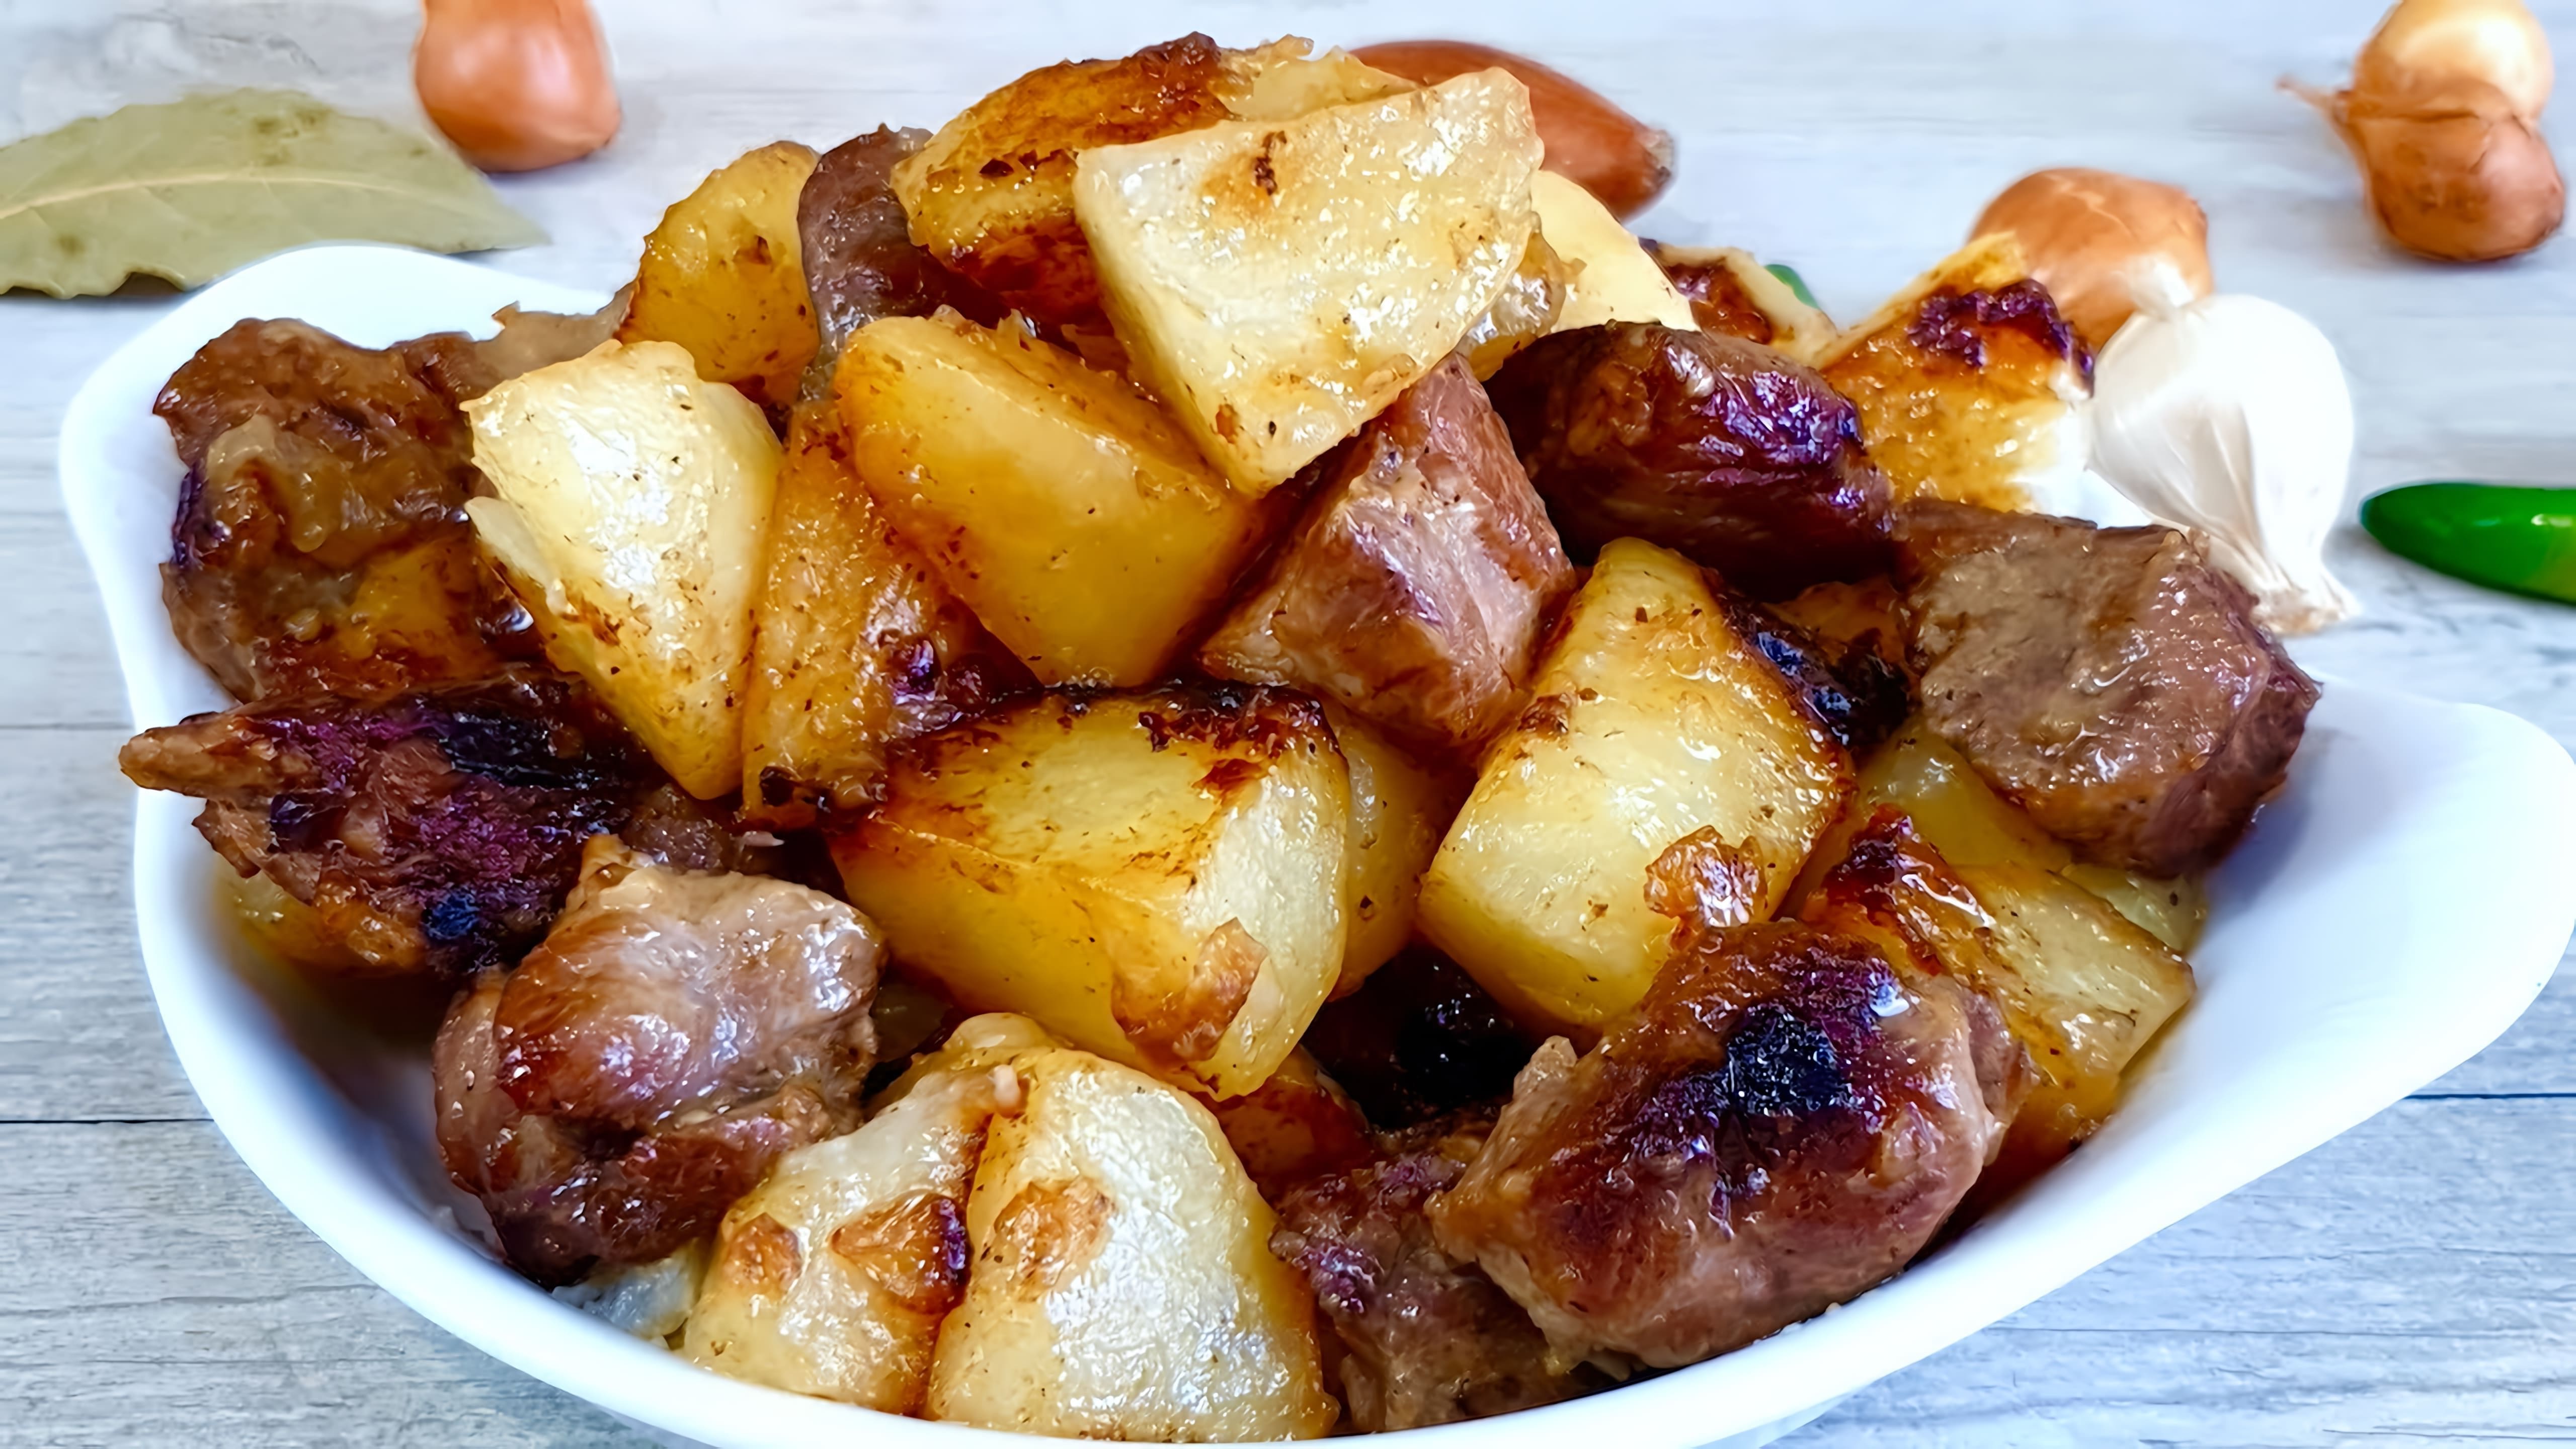 В этом видео демонстрируется процесс приготовления жареной картошки с мясом